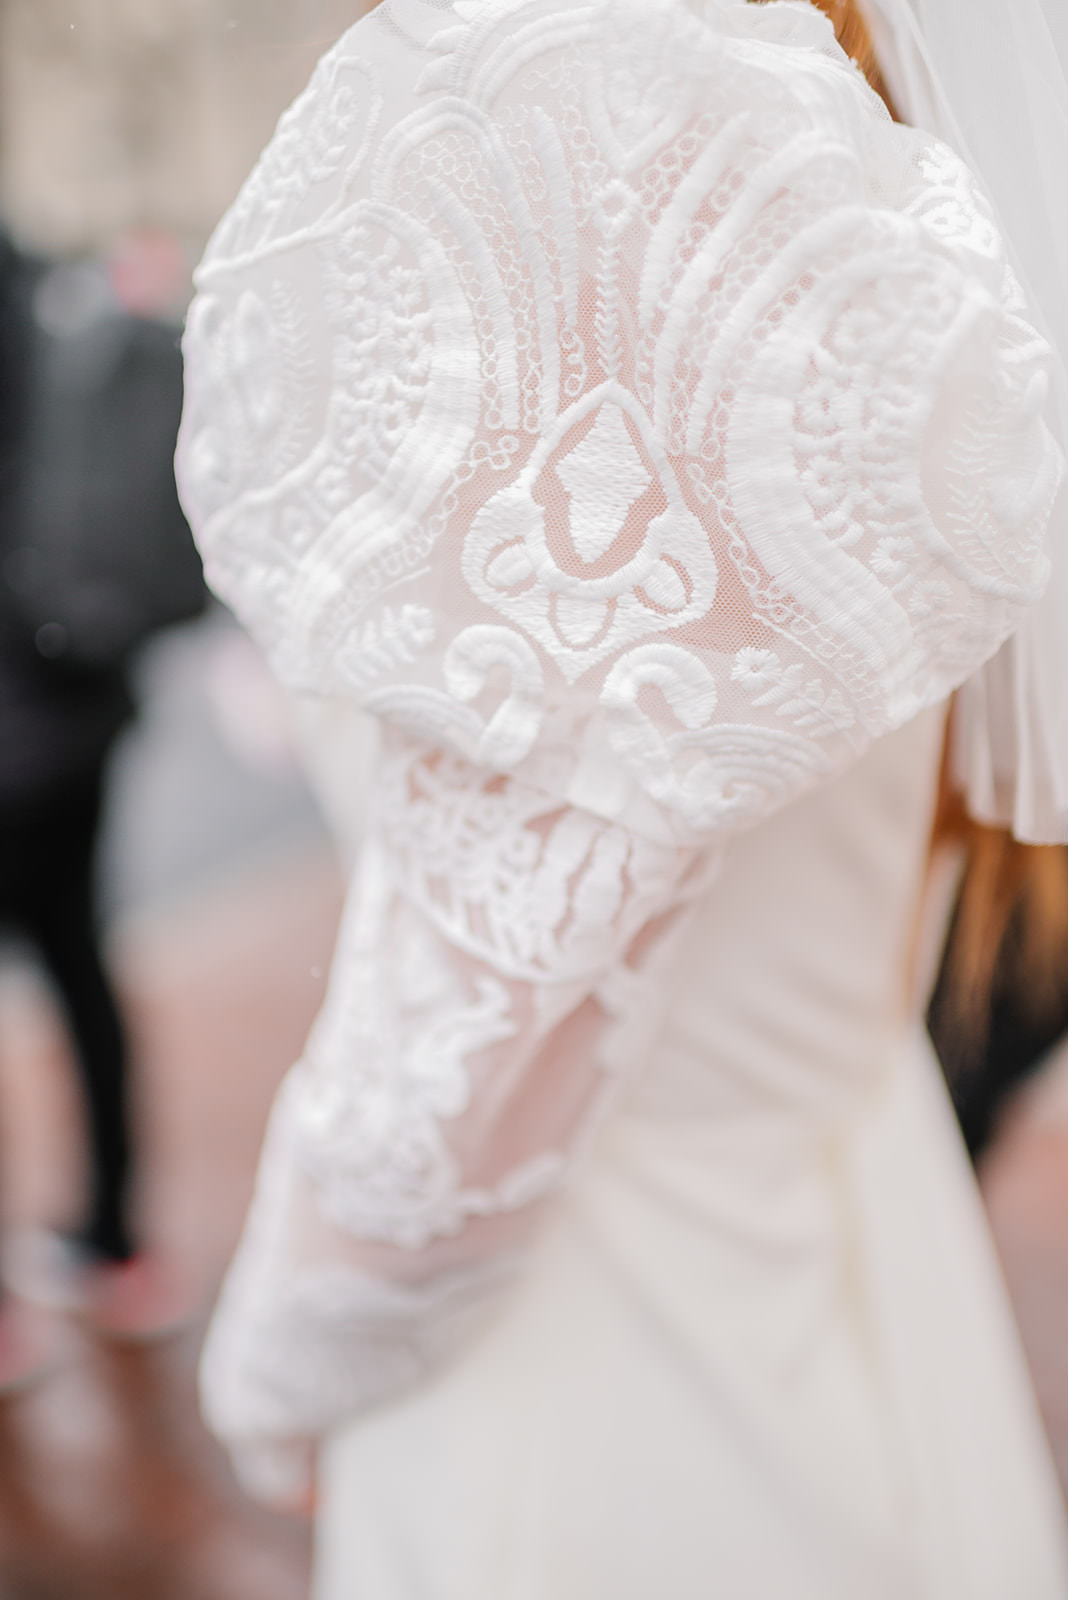 Bridal wedding dress, lace sleeve